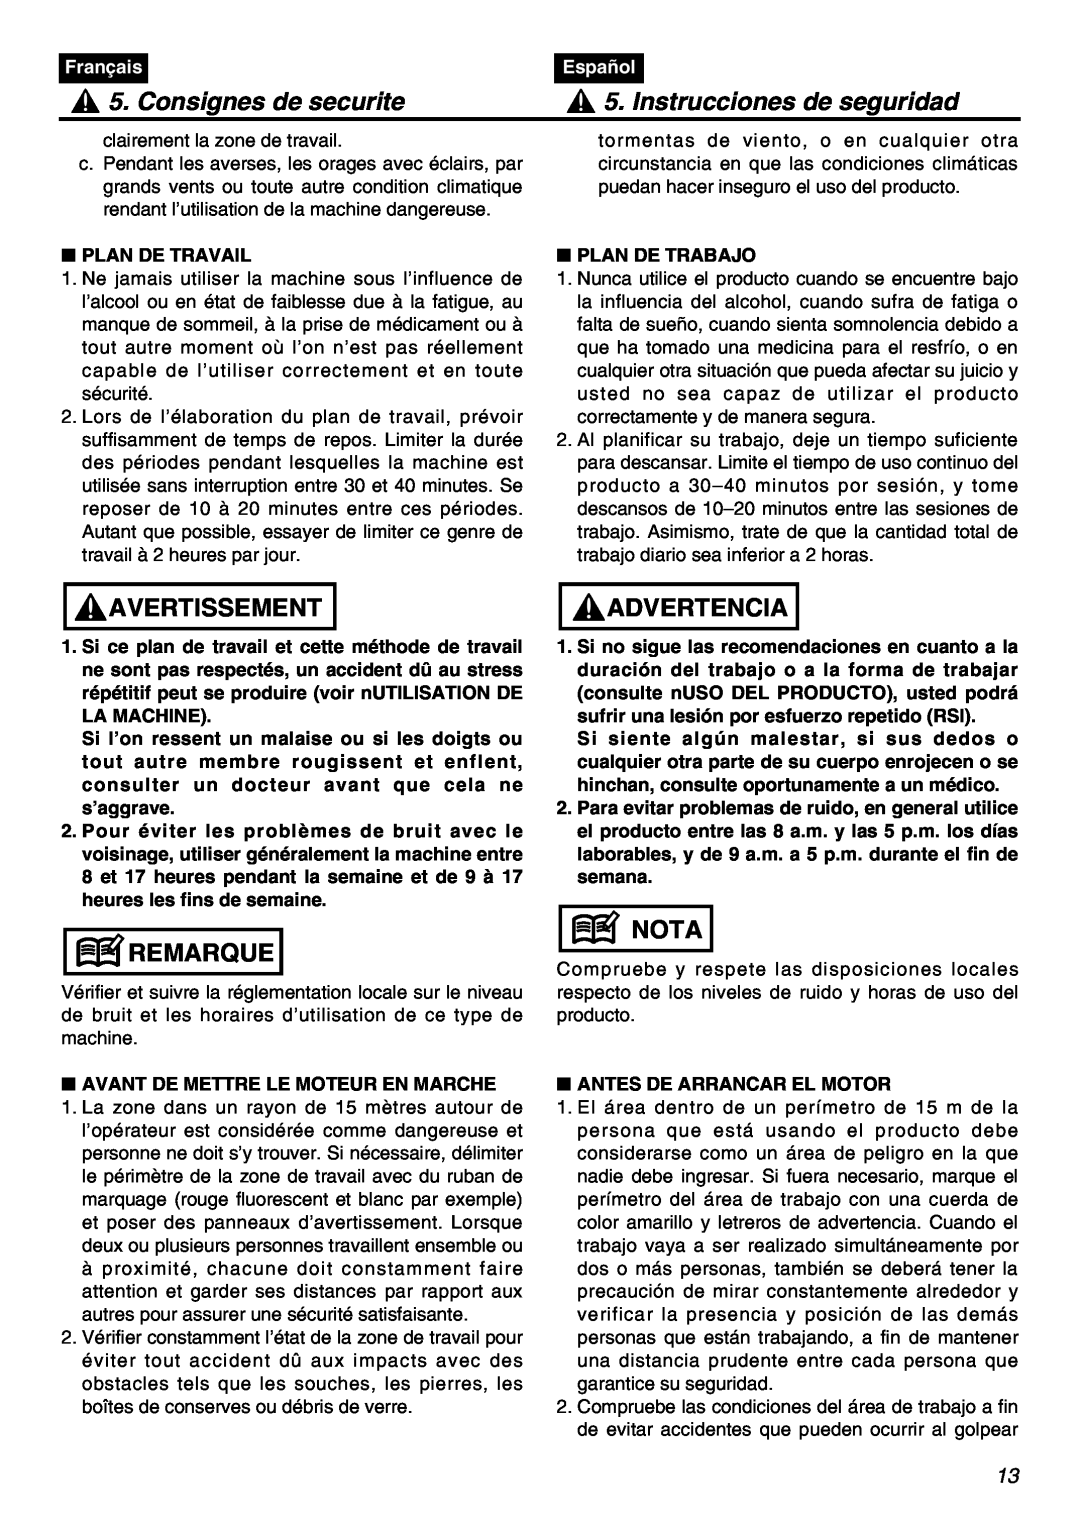 RedMax SRTZ2401F Consignes de securite, Instrucciones de seguridad, Avertissement, Remarque, Advertencia, Nota, Français 